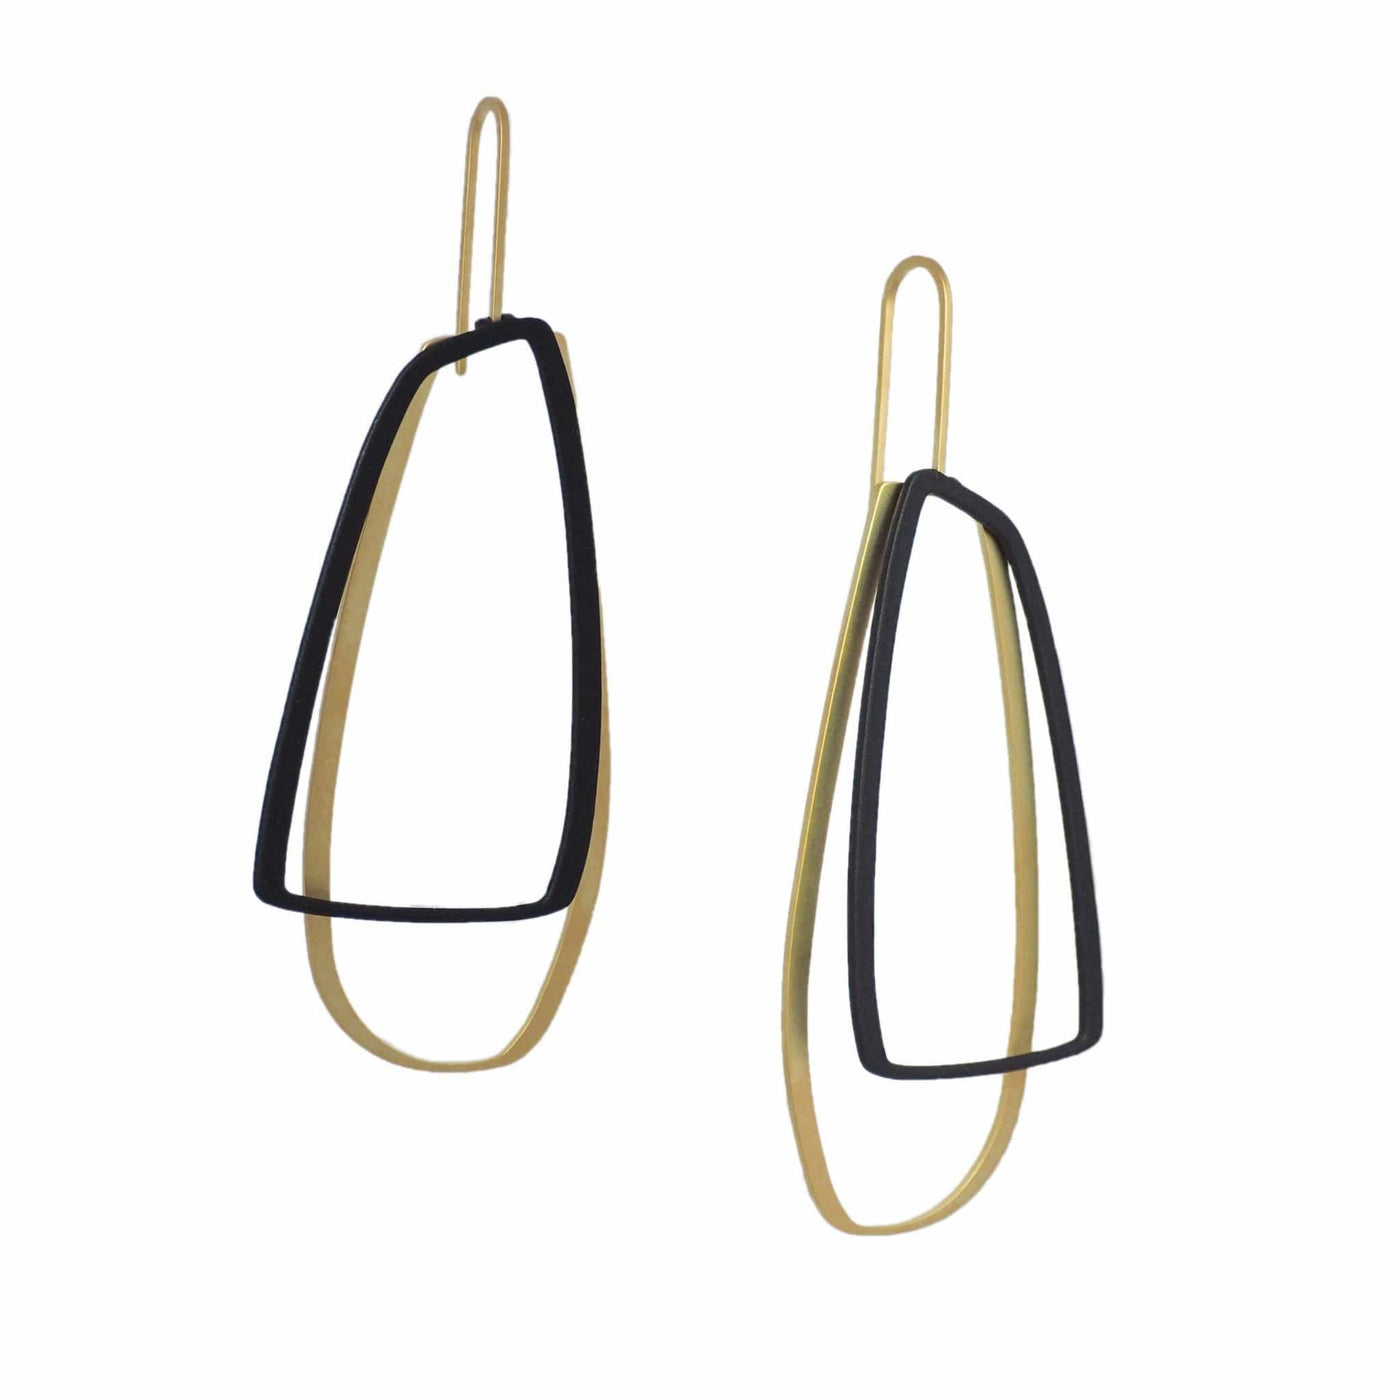 X2 Large Outline Earrings - Gold/ Black - inSync design